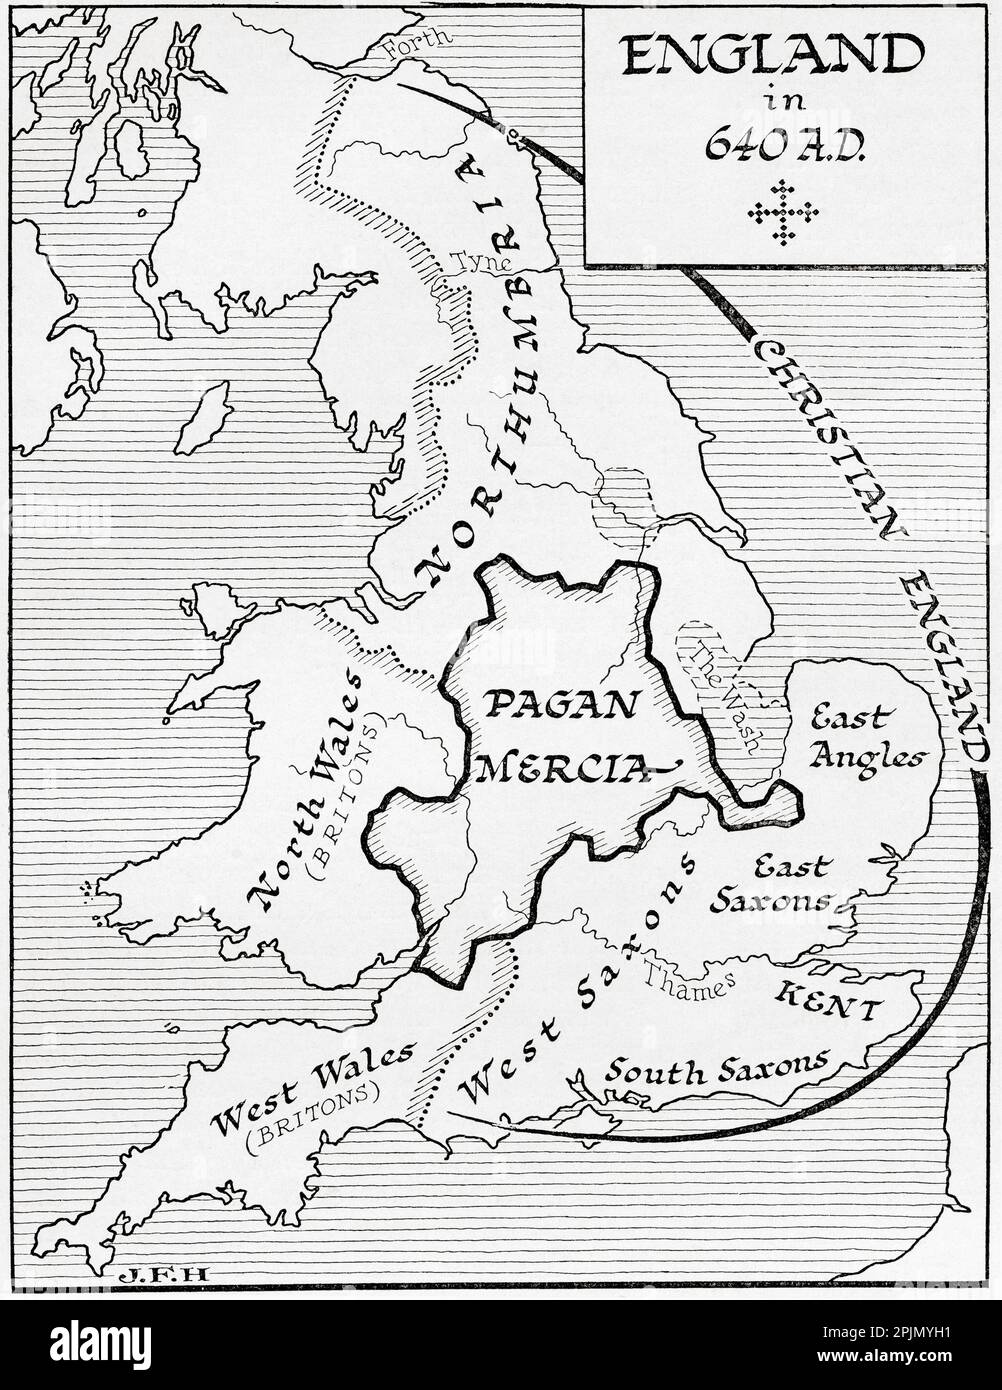 Mappa dell'Inghilterra nel 640 d.C. Dal libro Outline of History di H.G. Wells, pubblicato nel 1920. Foto Stock